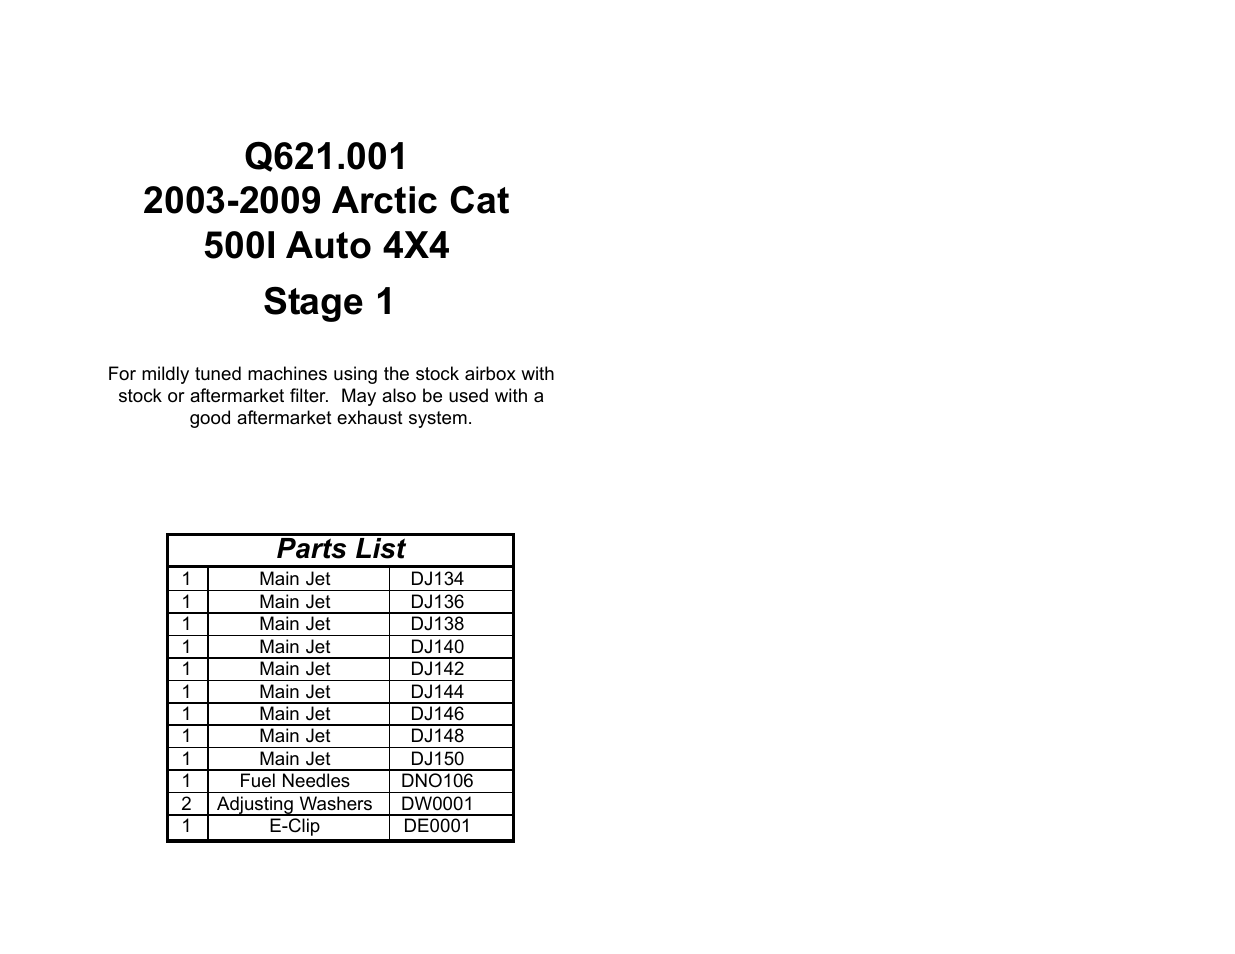 DynoJet Jet Kit for Arctic Cat 500 Manual (03-09)